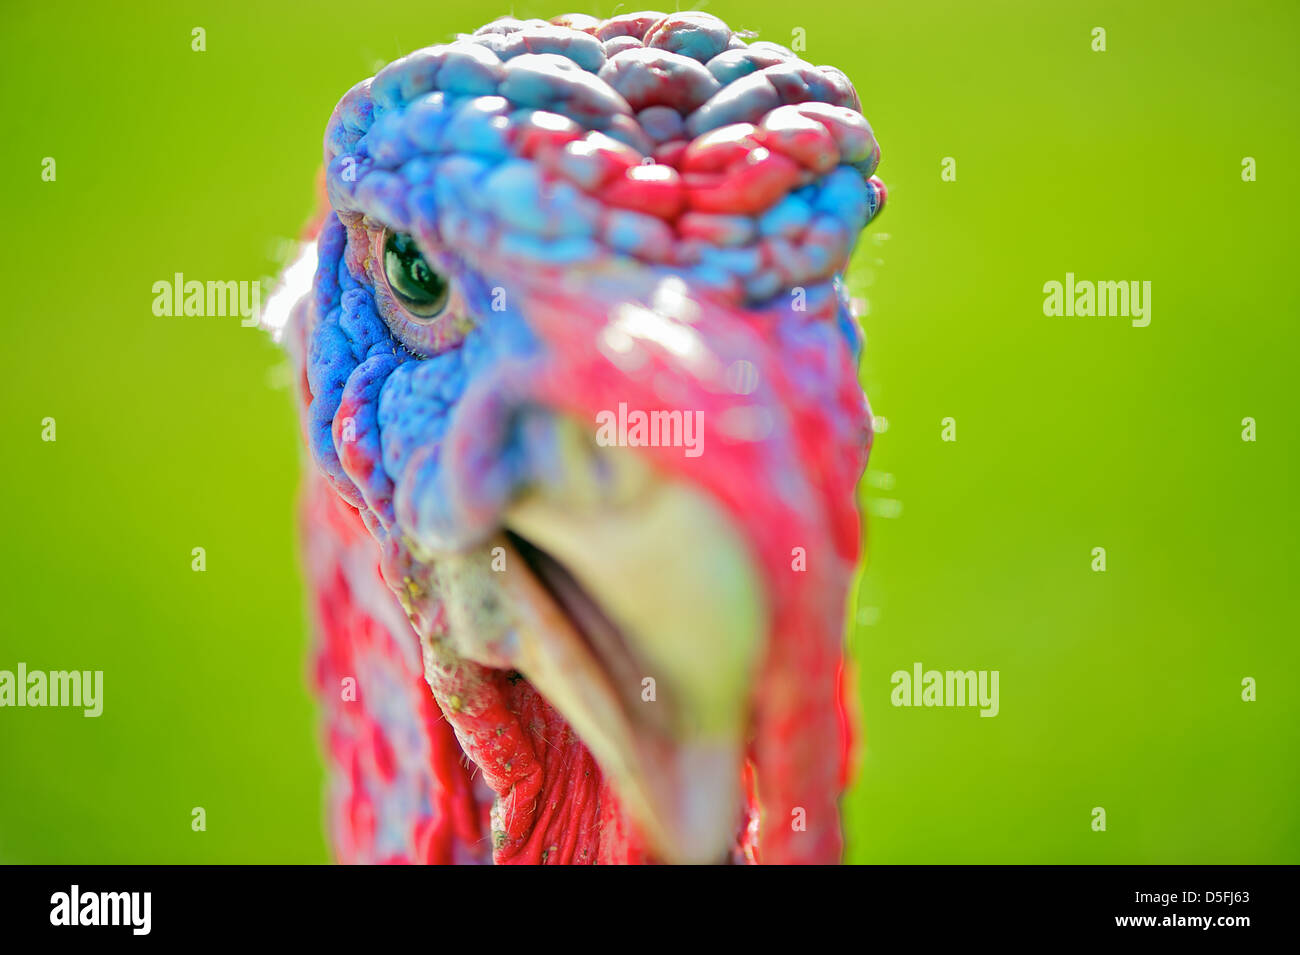 La Turquie close-up head-shot a porté sur l'œil. La Turquie a un bleu lumineux et de coloration rouge, et est définie sur un fond vert. Banque D'Images